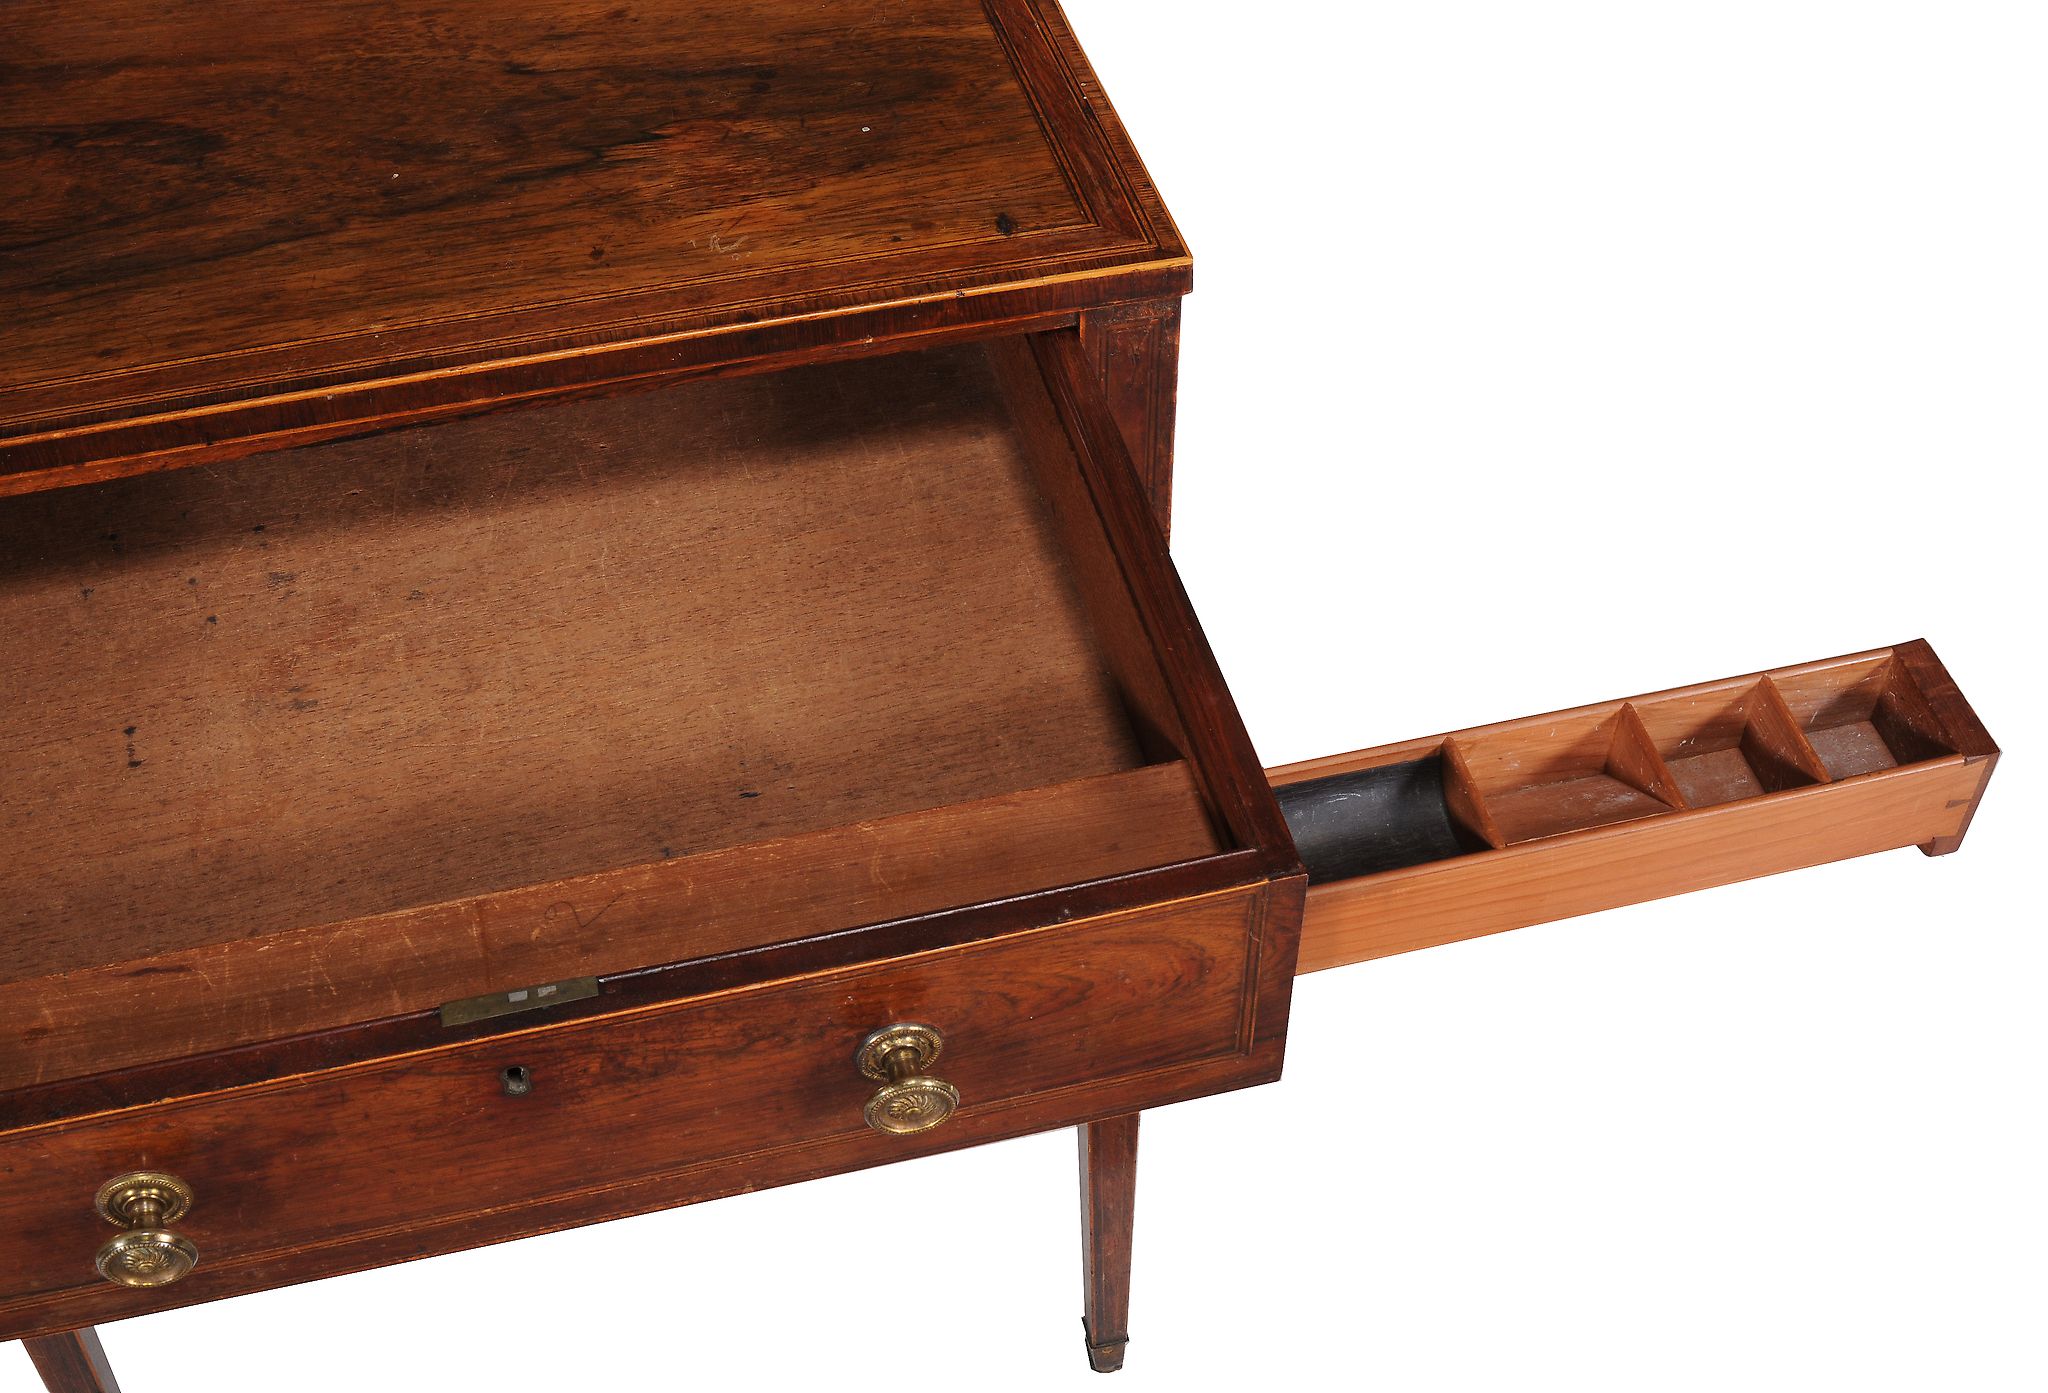 Ω A Regency rosewood and line inlaid work table , circa 1815, possibly Scottish, the single drawer - Image 2 of 3